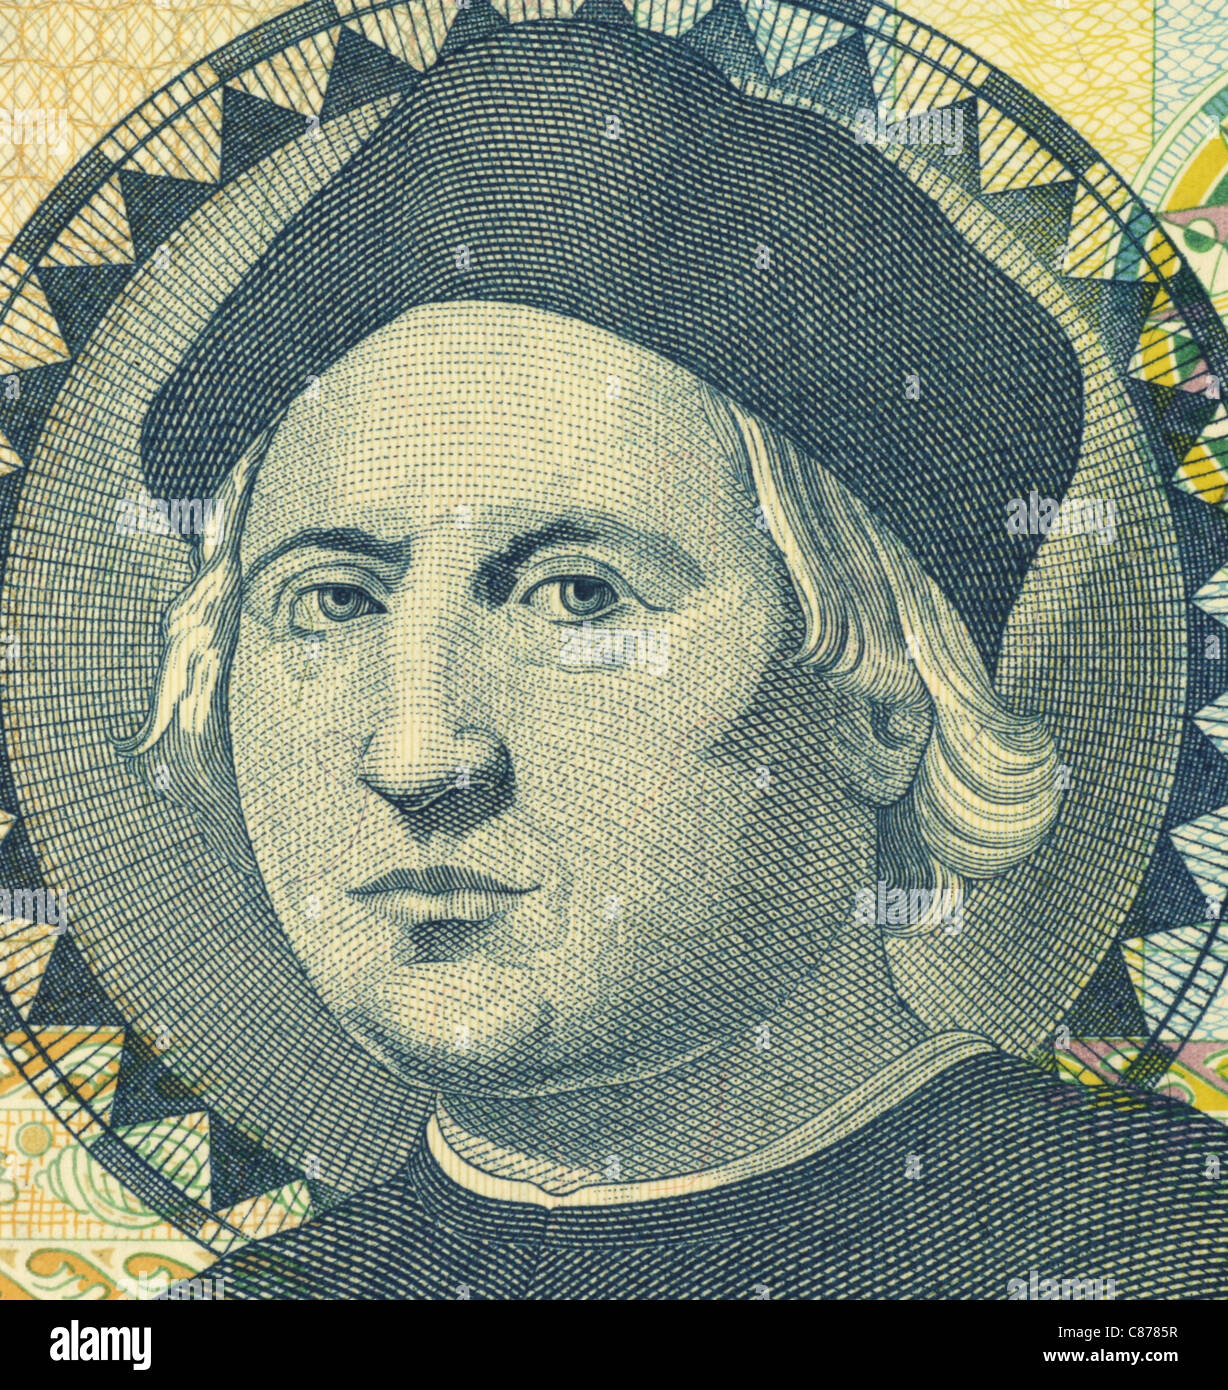 Christopher Columbus (1451-1506) auf 1 Dollar 1992 Banknote von Bahamas. Italienische Entdecker, Kolonisator und Navigator. Stockfoto